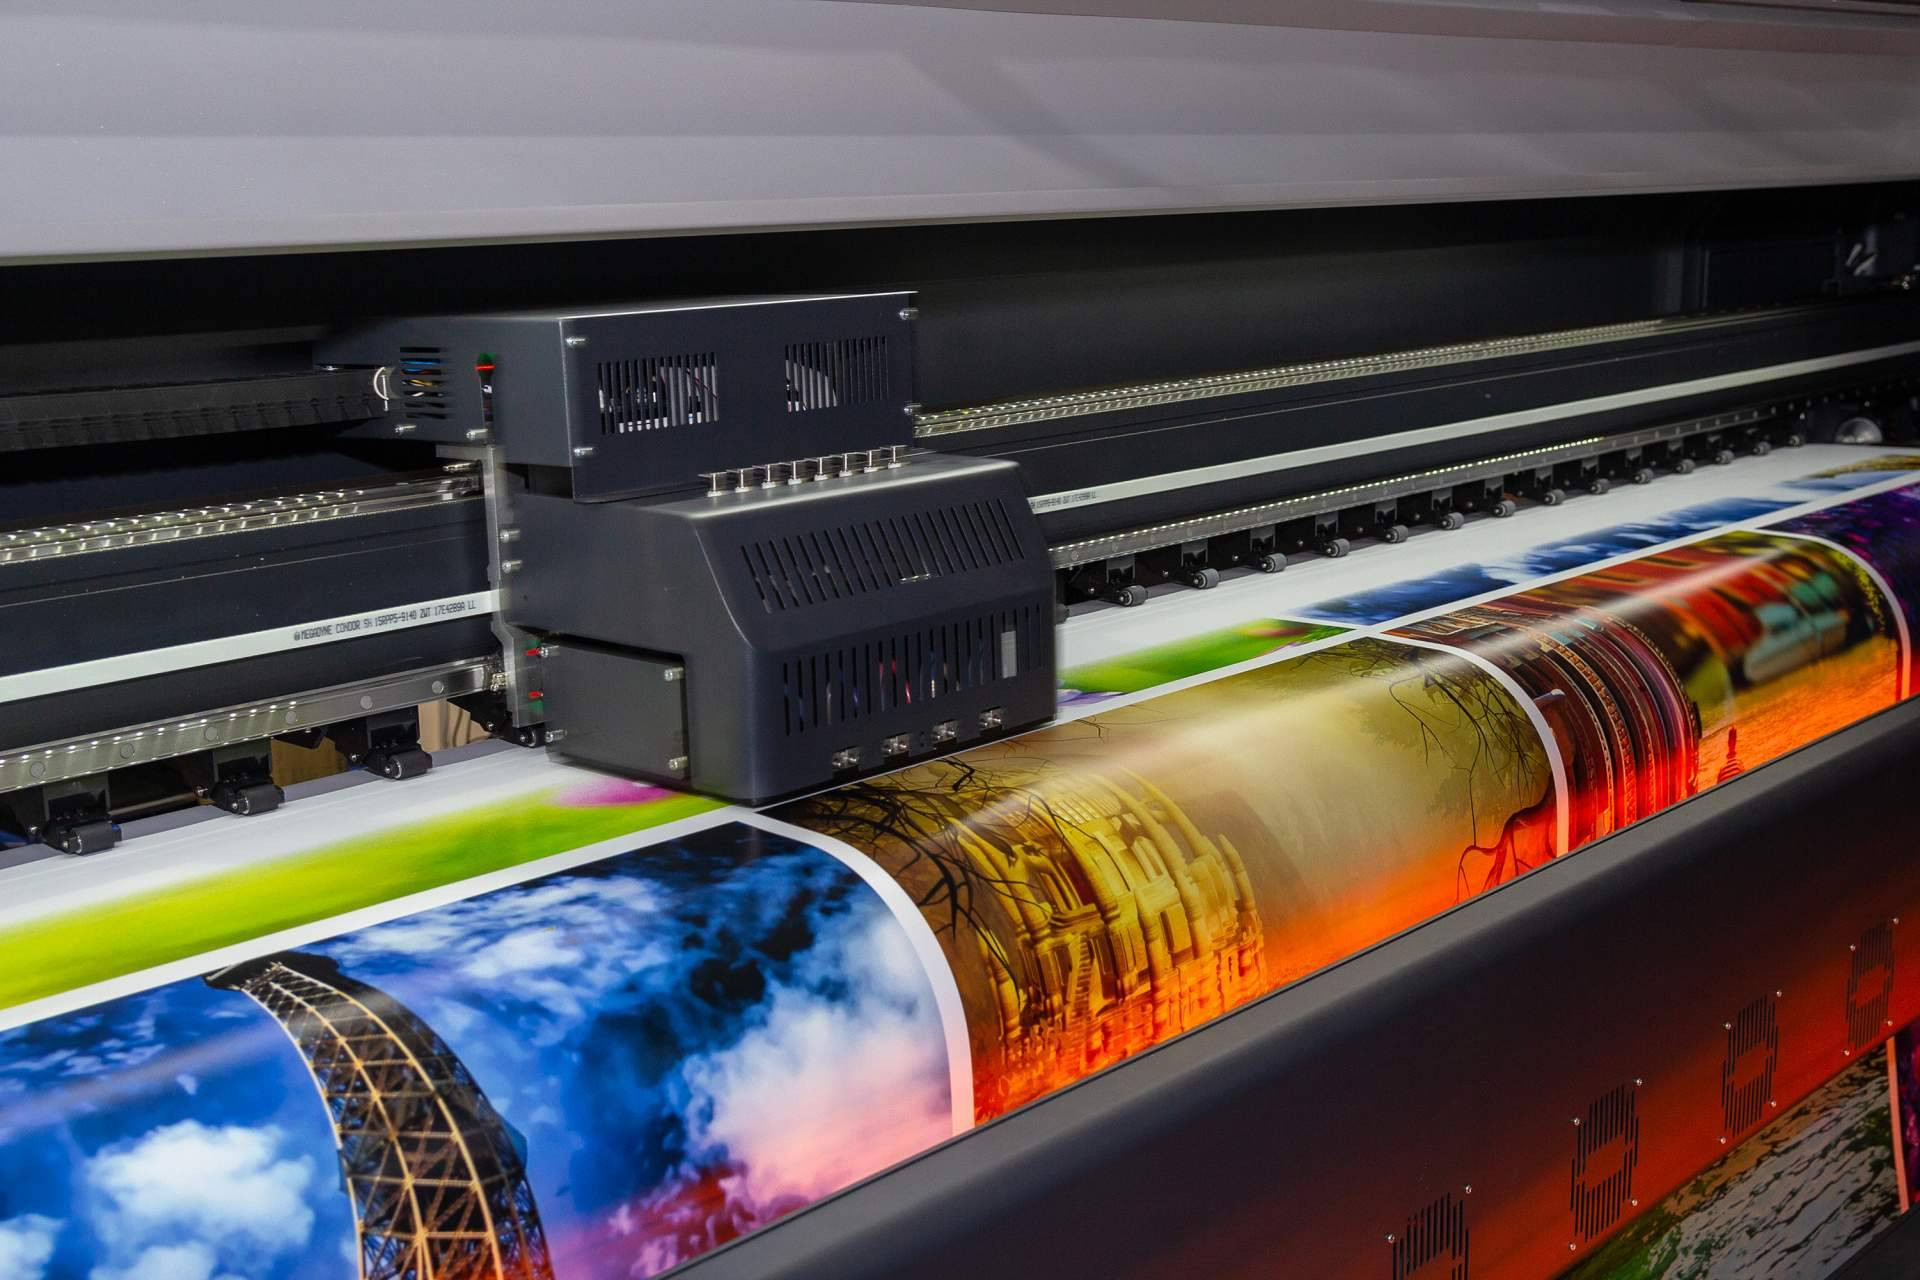  Las ventajas de contratar los servicios de impresión offset y digital de Lozano Impresores 